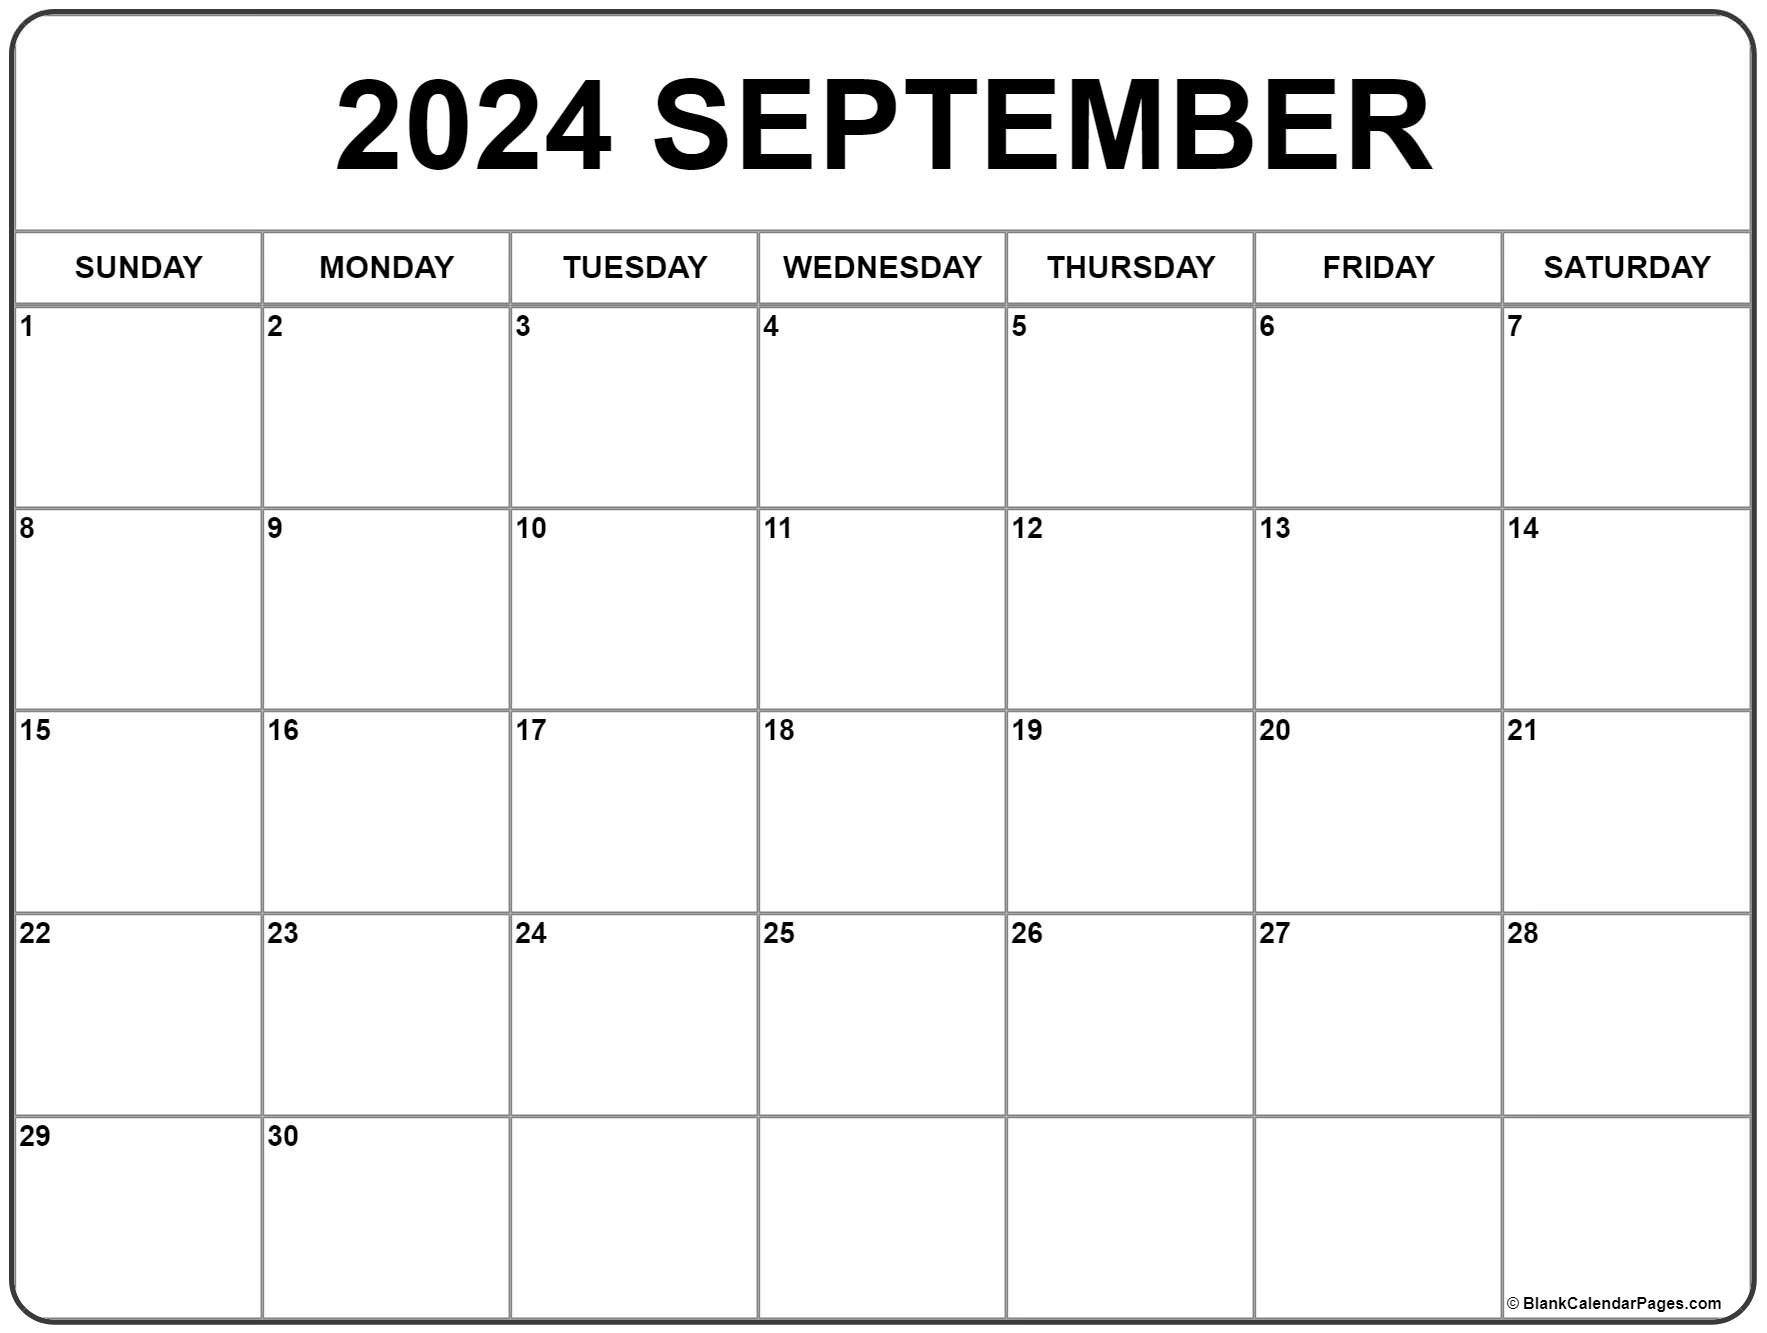 Sept 2024 Printable Calendar Dec 2024 Calendar With Holidays